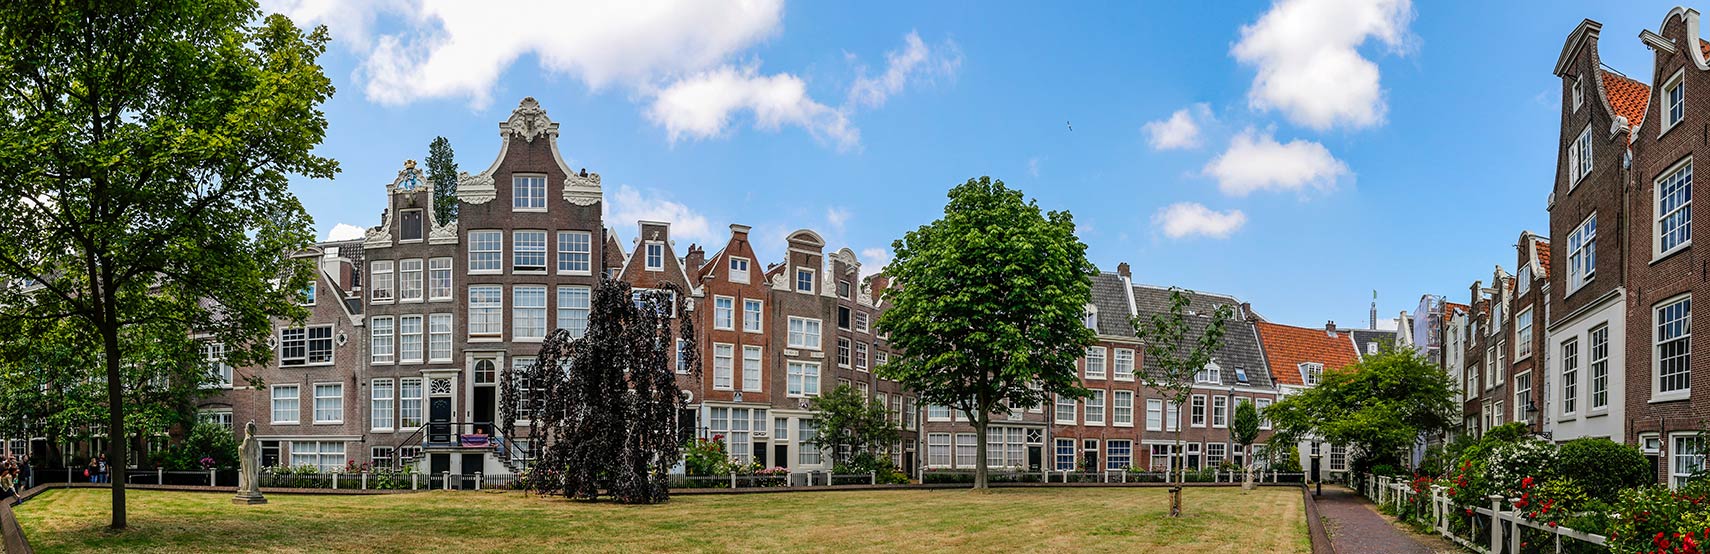 Begijnhof in Amsterdam, Netherlands